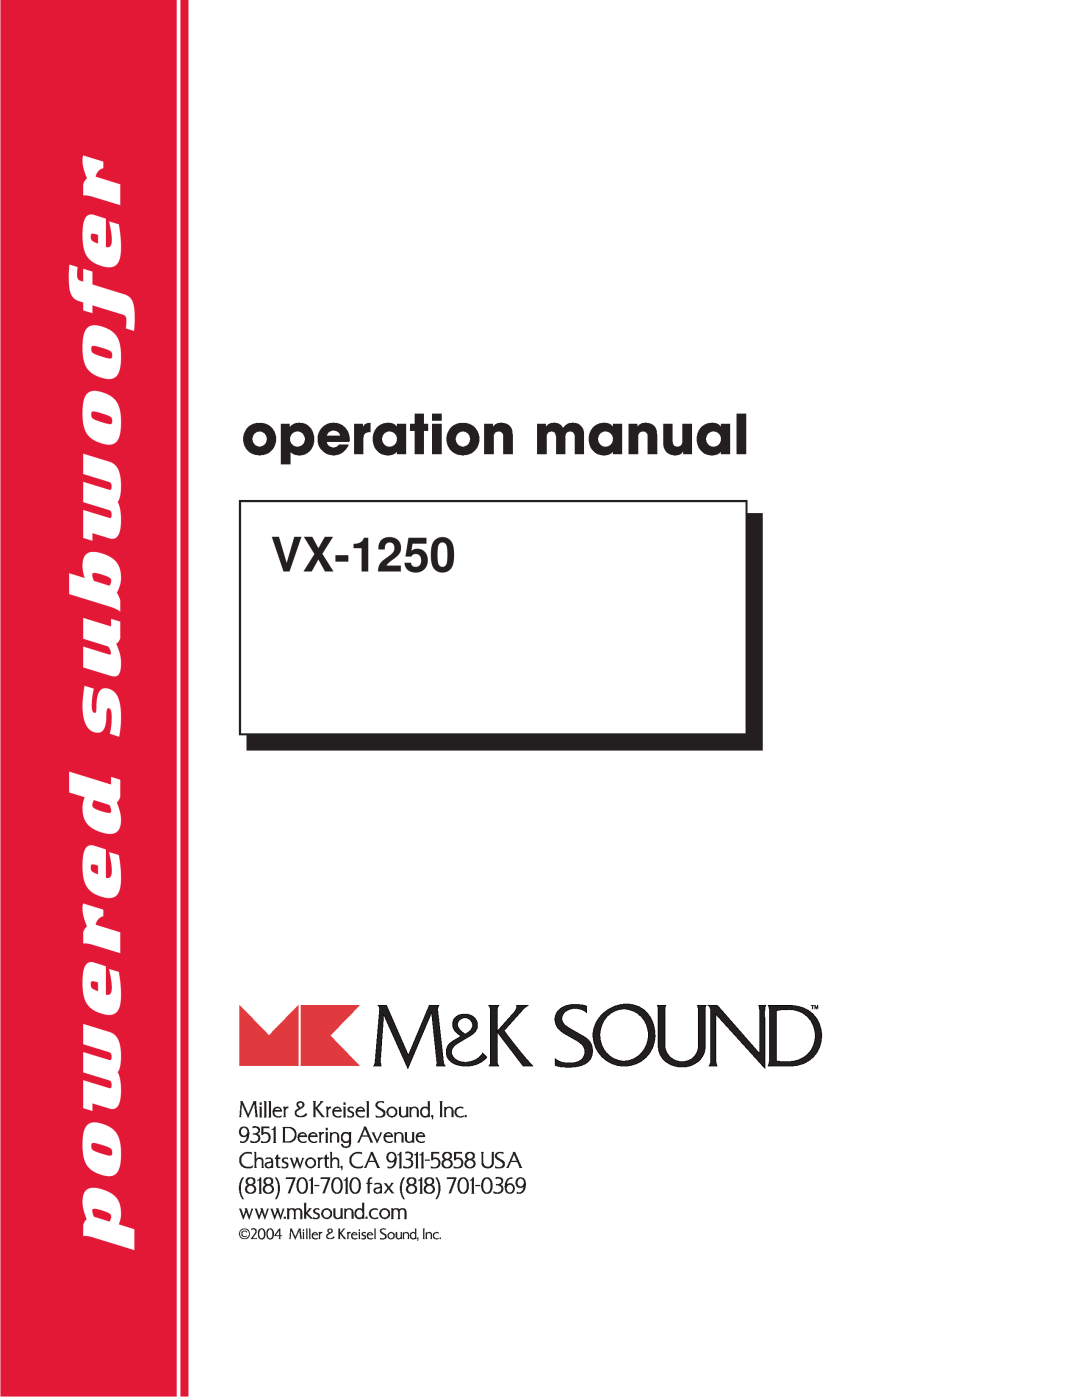 MK Sound VX-1250 operation manual powered subwoofer, Miller & Kreisel Sound, Inc 9351 Deering Avenue 